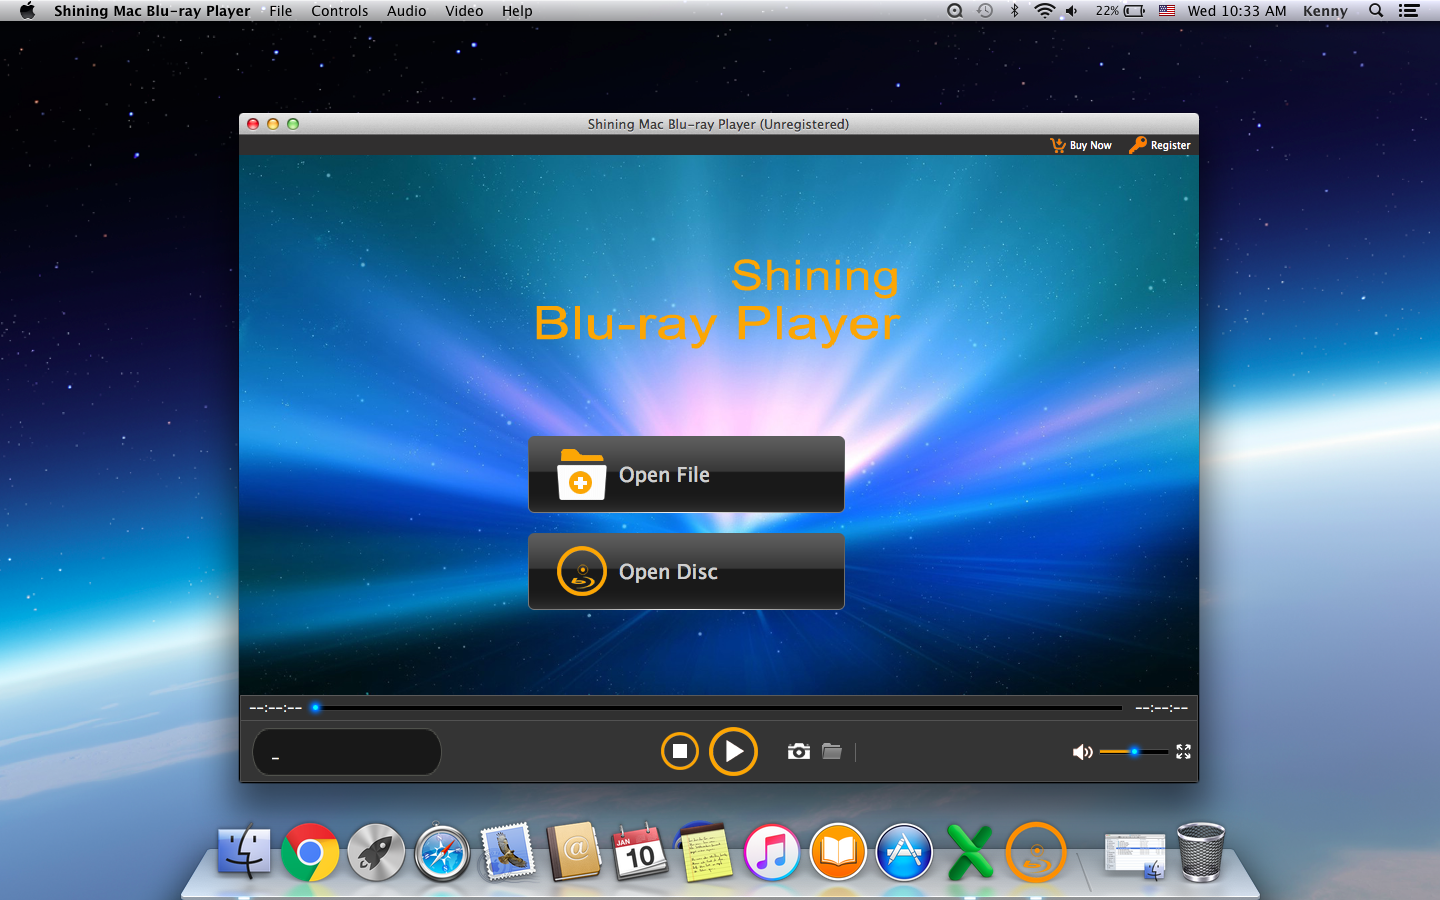 Shining Mac Blu-ray Player 6.6.6 full